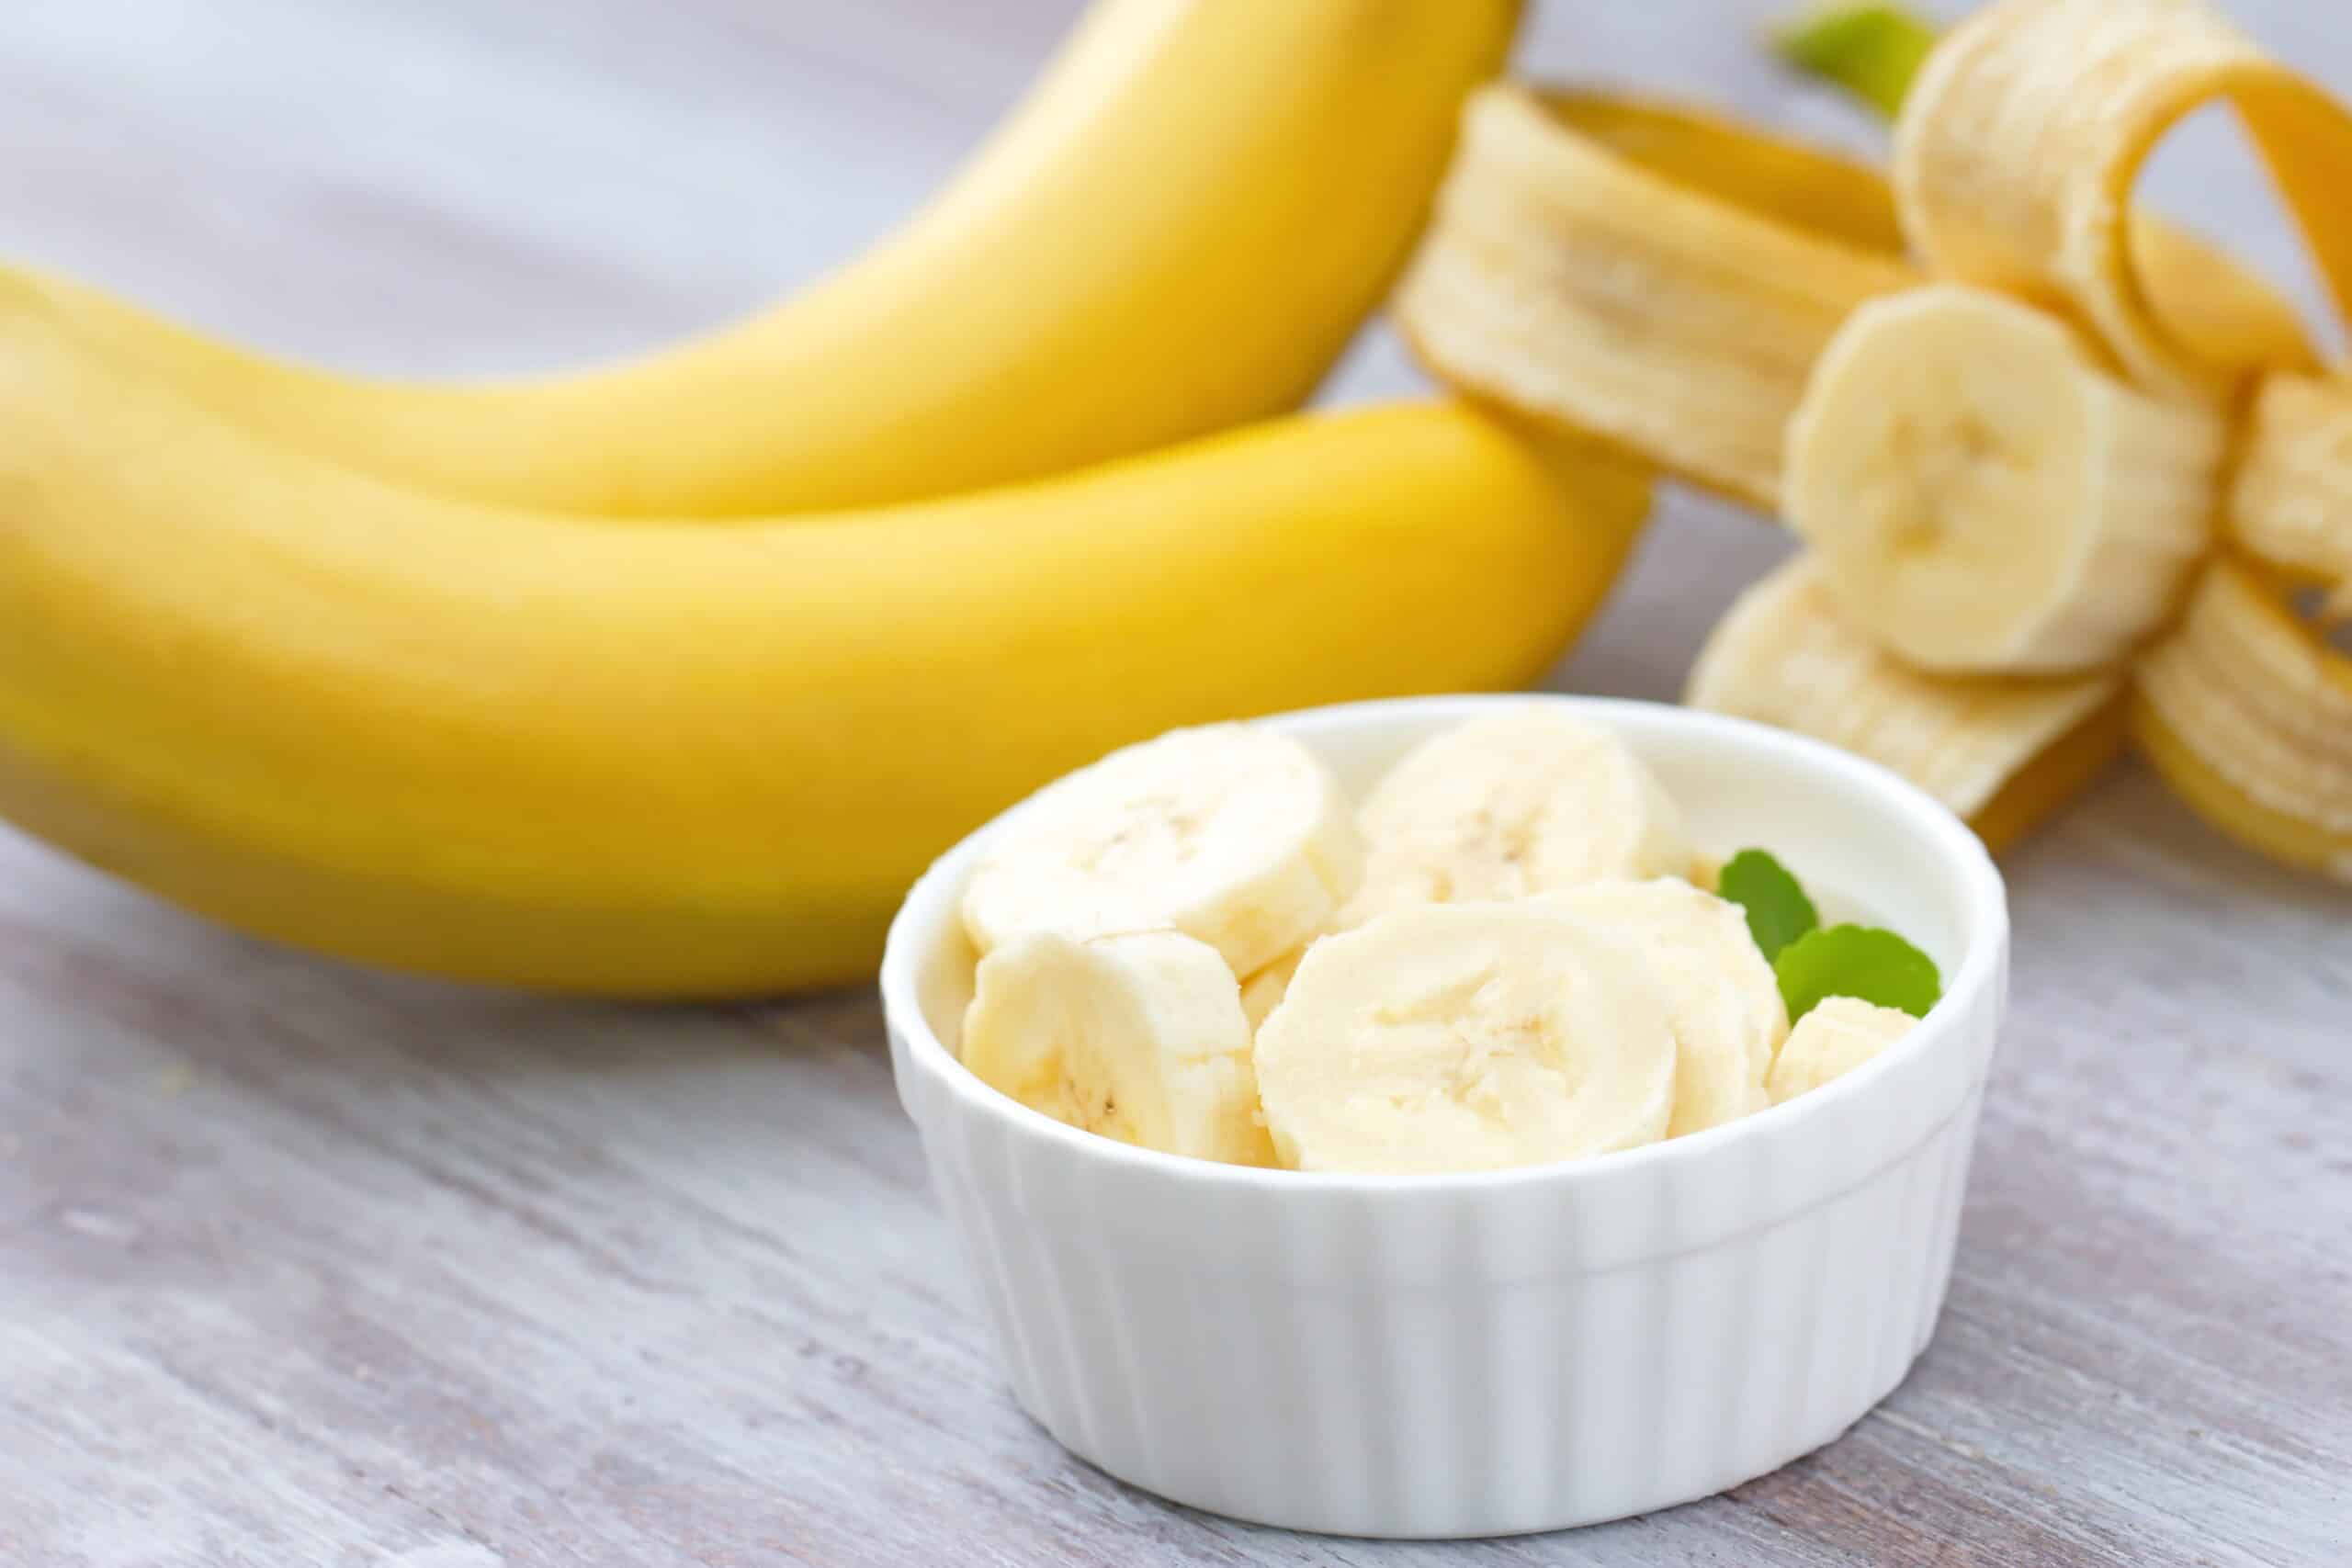 L'Astuce Secrète Pour Conserver les Bananes Fraîches Plus Longtemps.